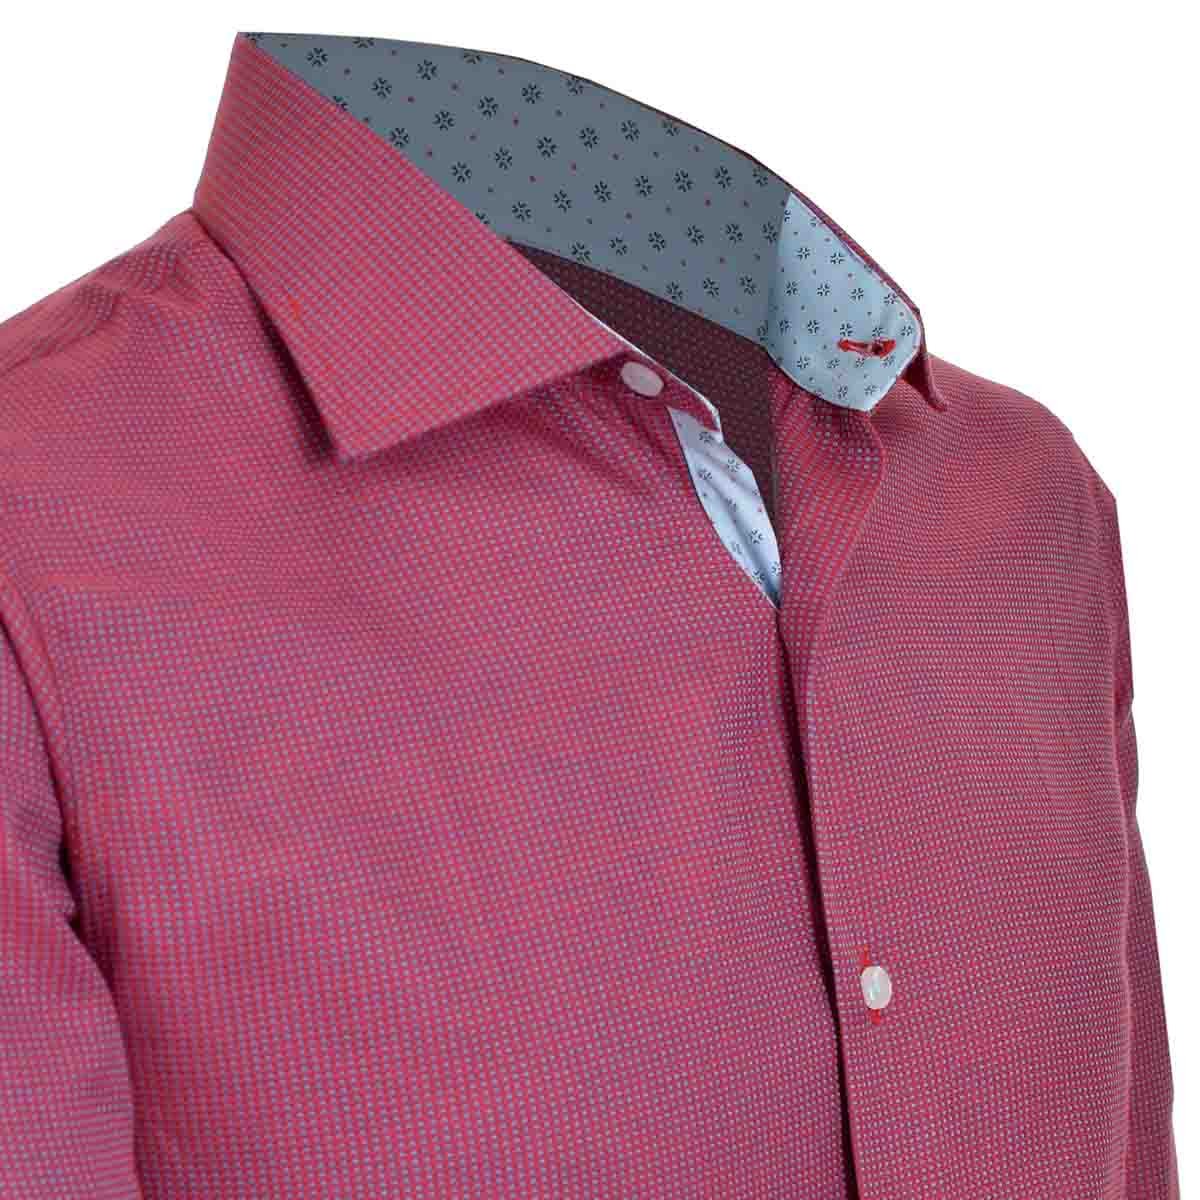 Camisa de Vestir Slim Fit Rojo Obscuro Secf-0719 Carlo Corinto para Caballero